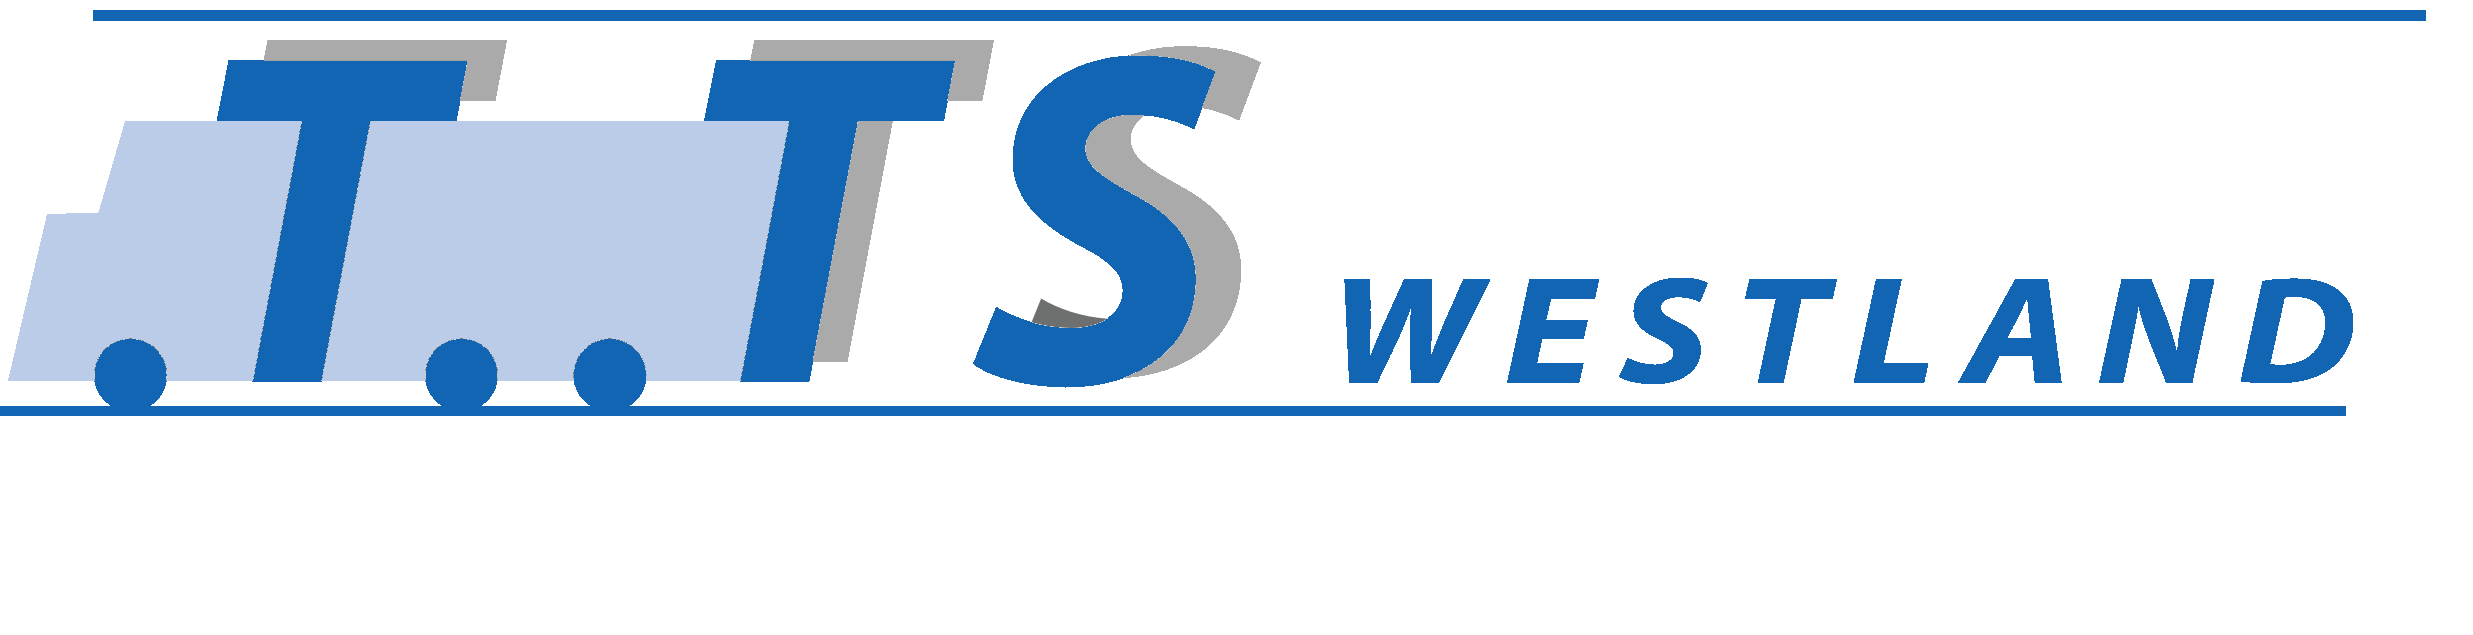 TTS-Huisstijl2-blauw